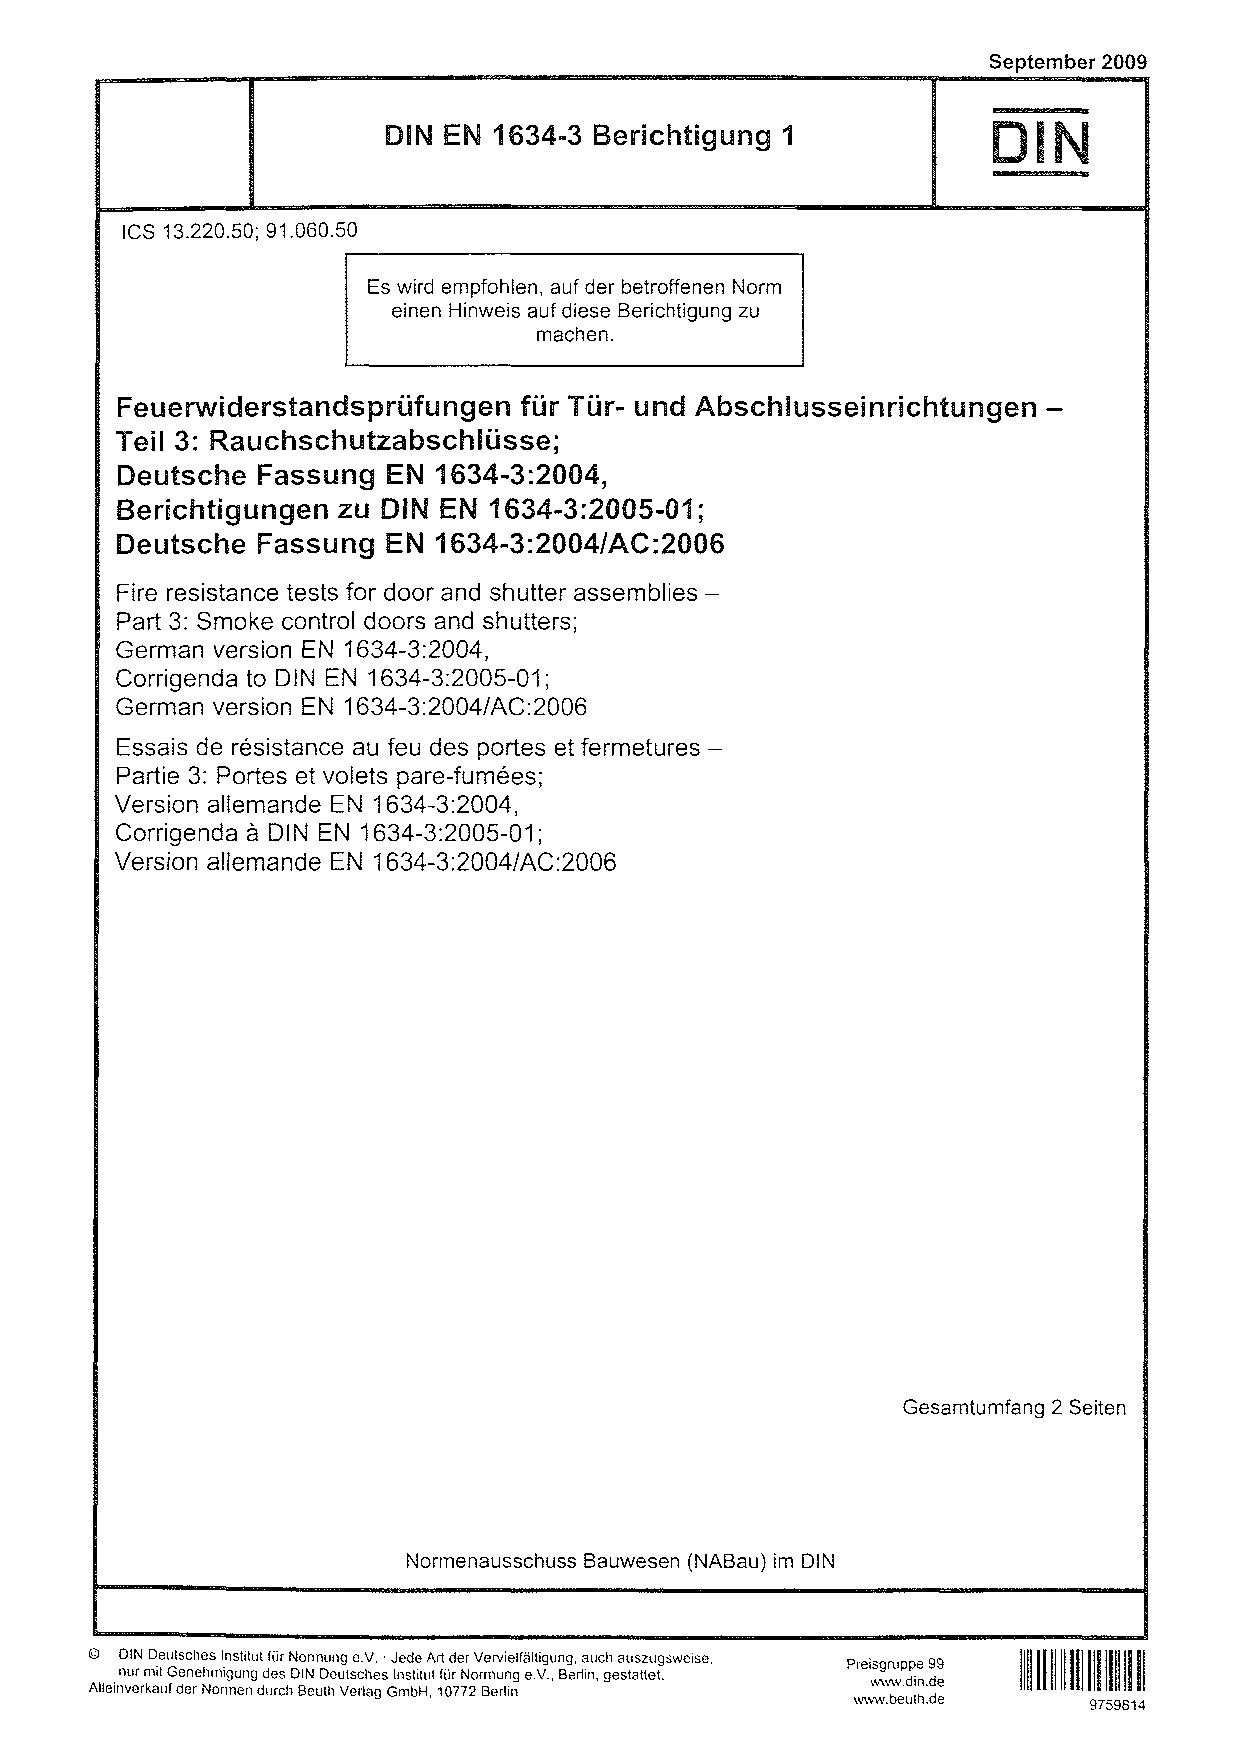 DIN EN 1634-3 Berichtigung 1:2009-09封面图